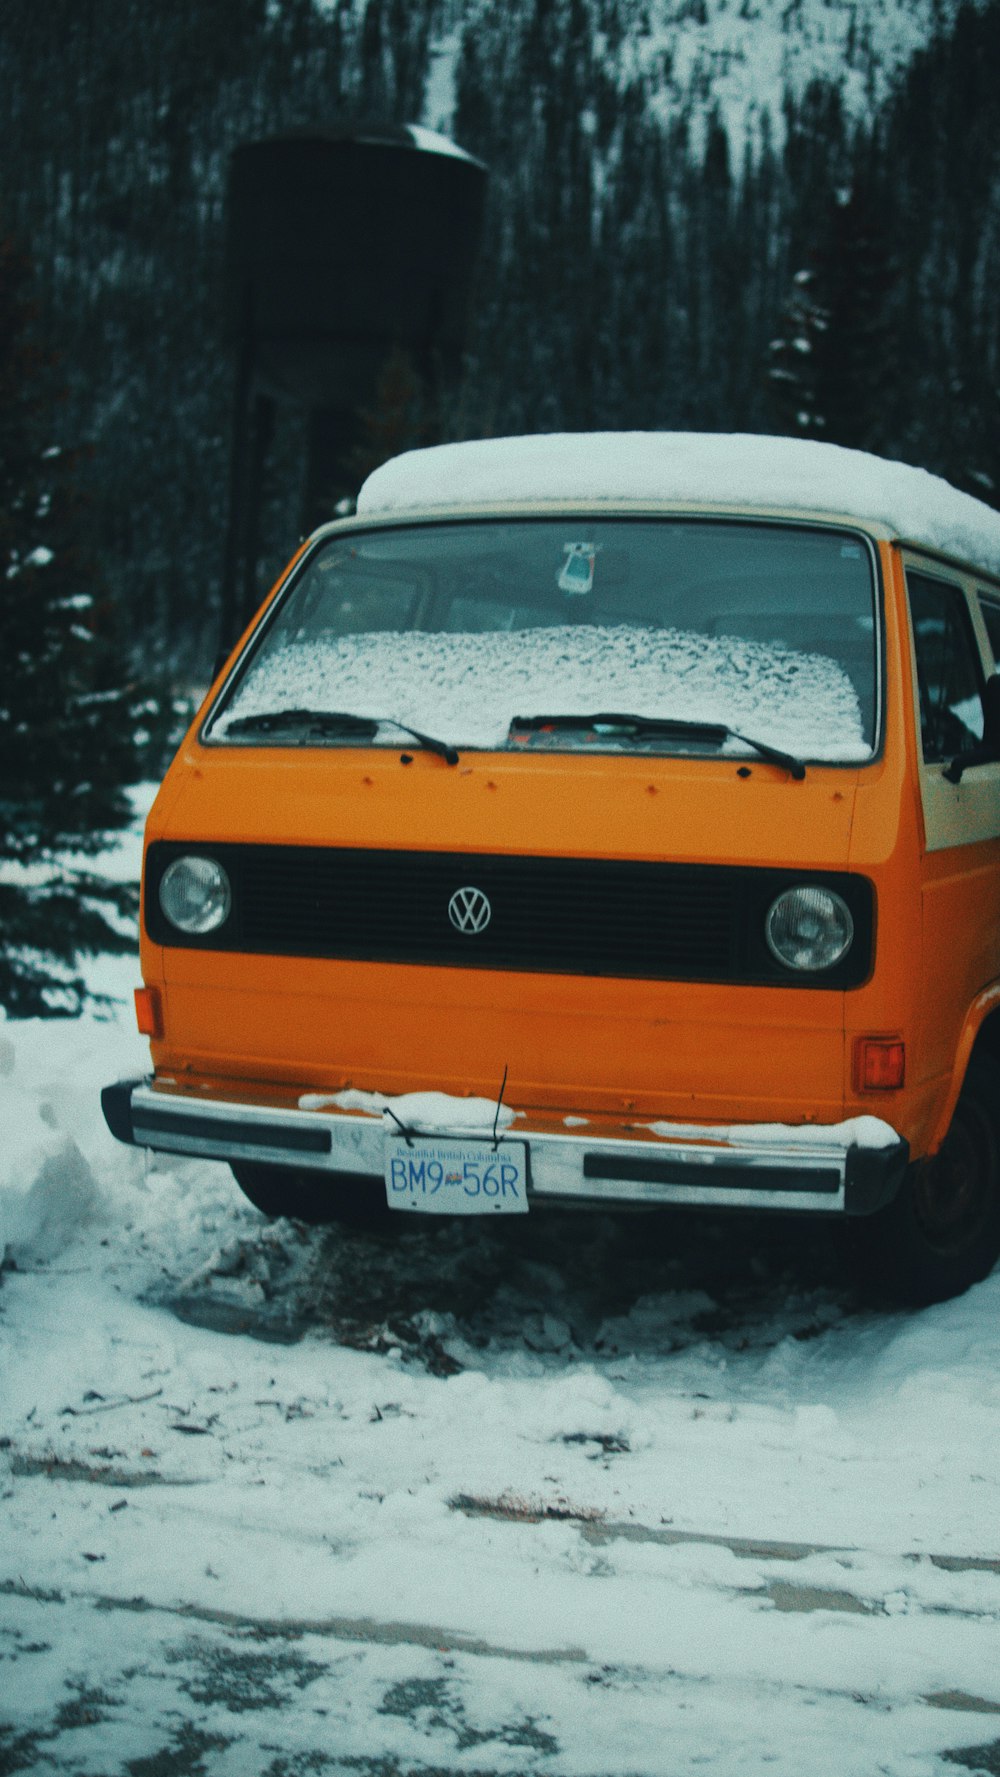 furgone Volkswagen arancione e bianco